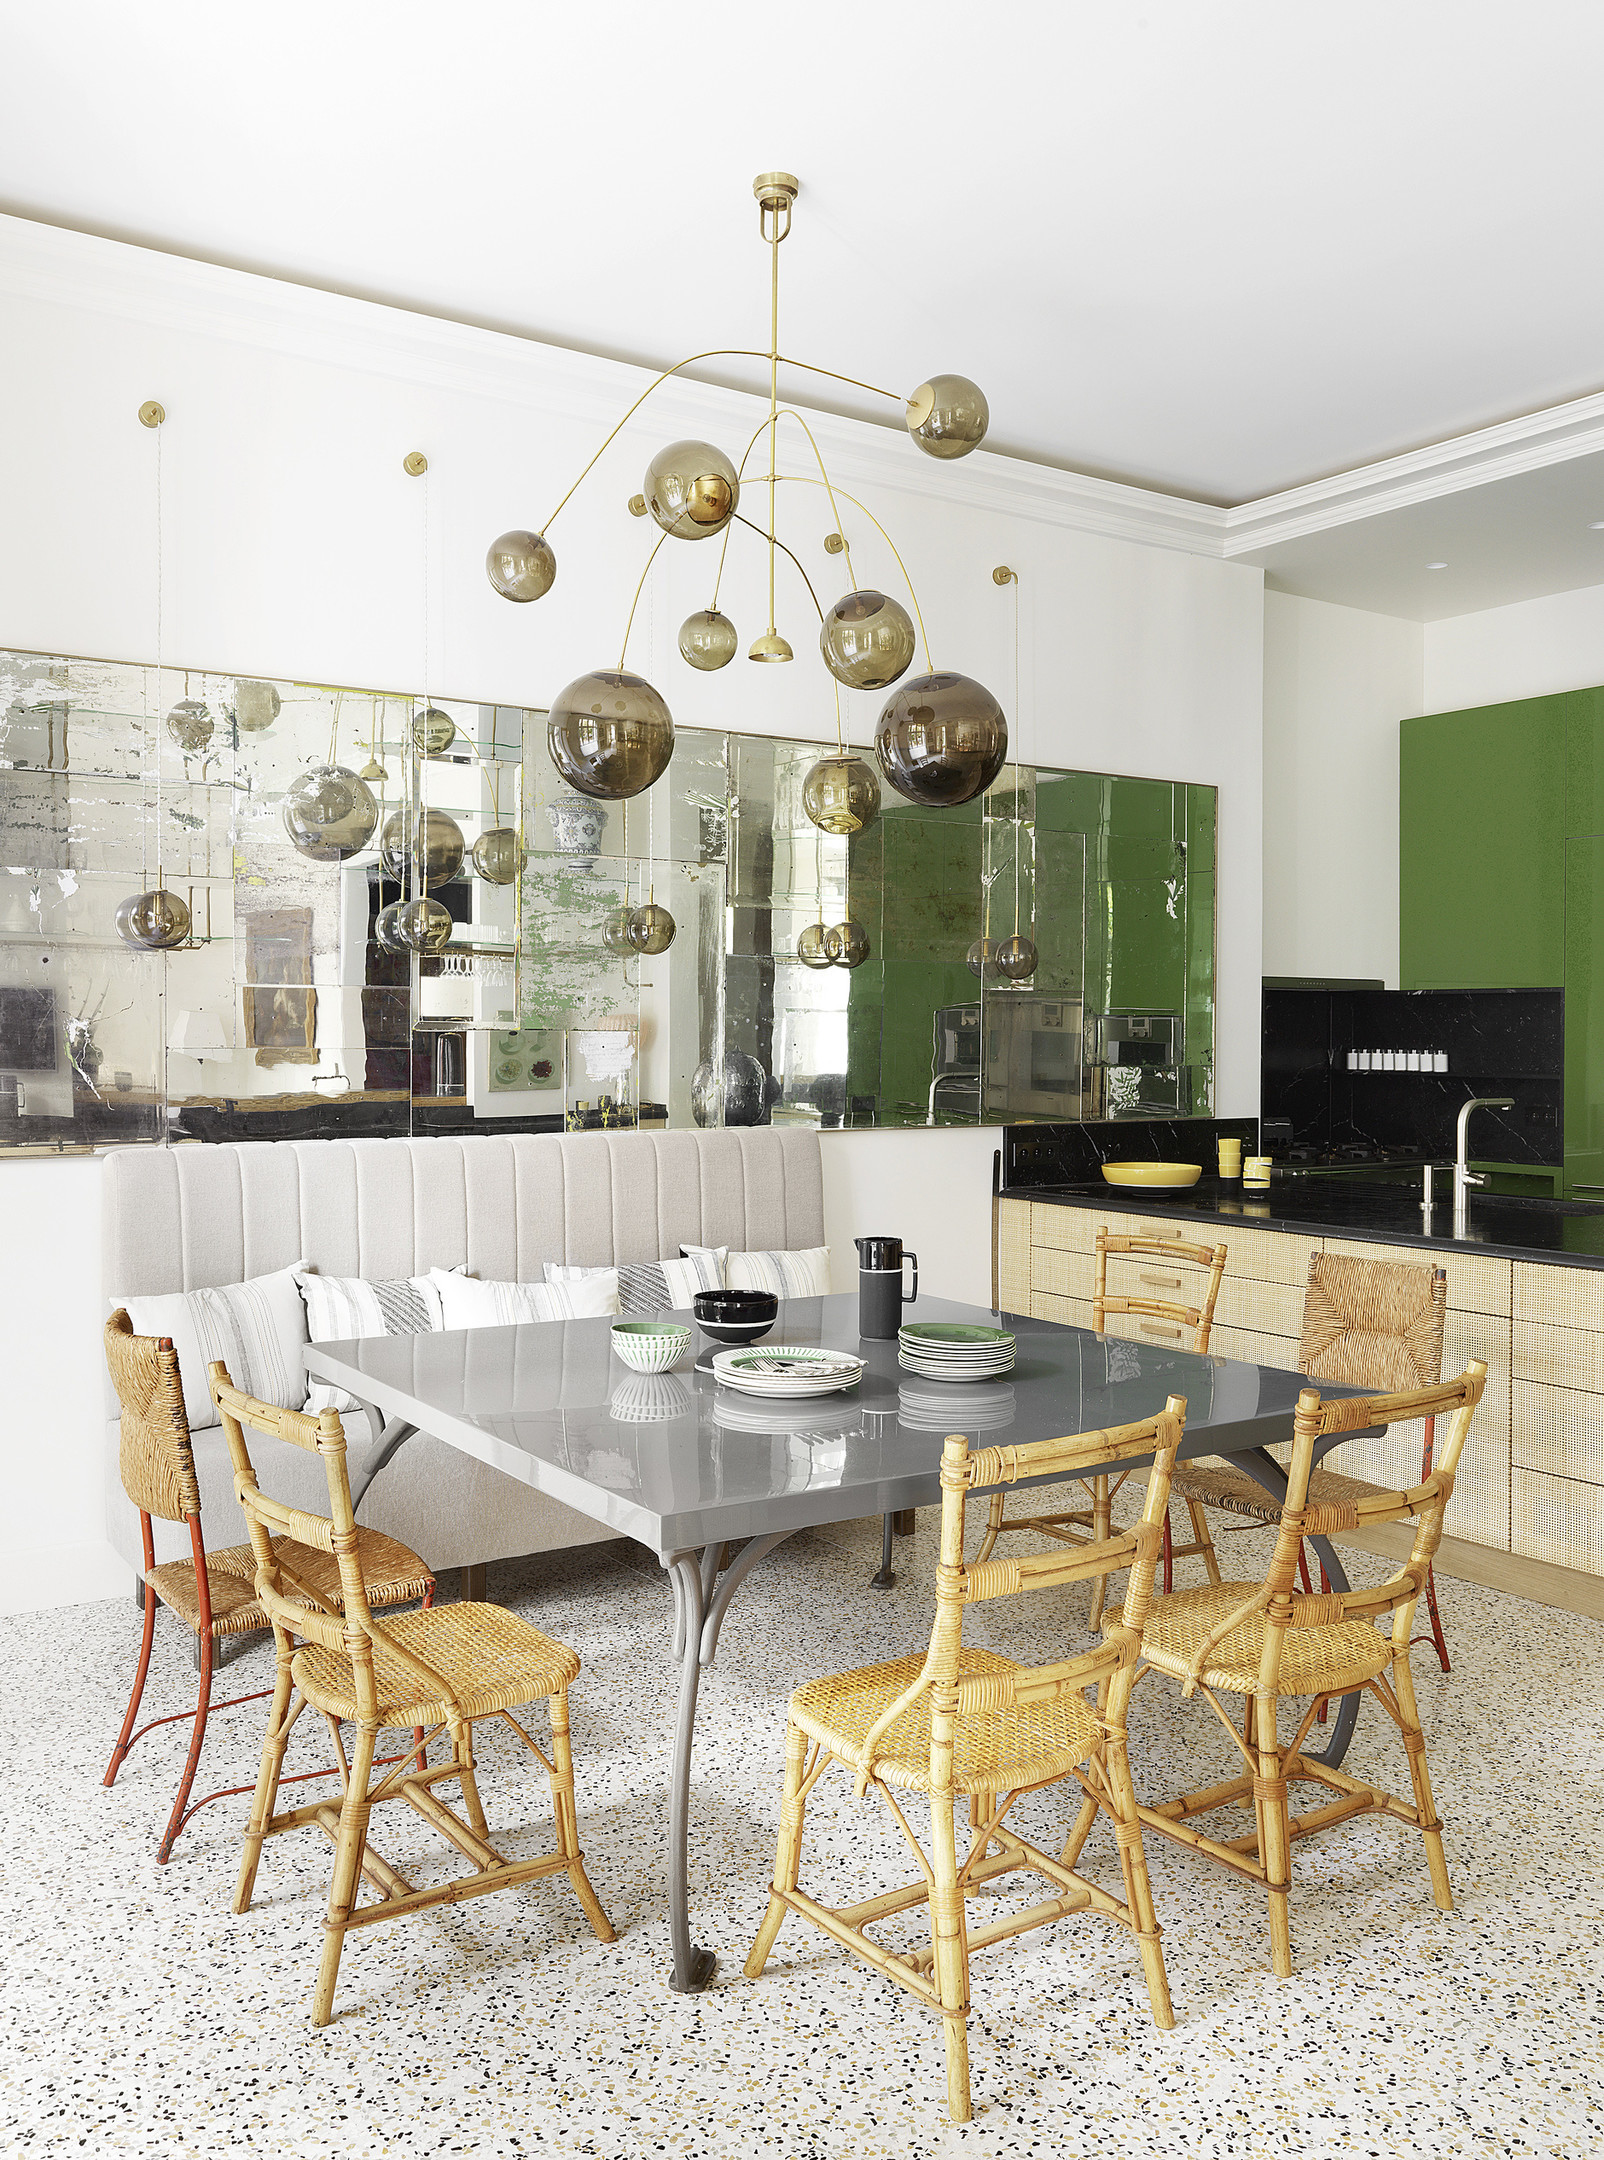 Khu vực ăn uống trong căn hộ ở Paris (Pháp) do NTK Sarah Lavoin thiết kế đã chứng minh sự linh hoạt của nội thất mây tre đan. Khi kết hợp với bàn ăn bằng kim loại sáng bóng, những chiếc ghế mộc mạc vẫn không hề 'lạc điệu' đúng không nào?